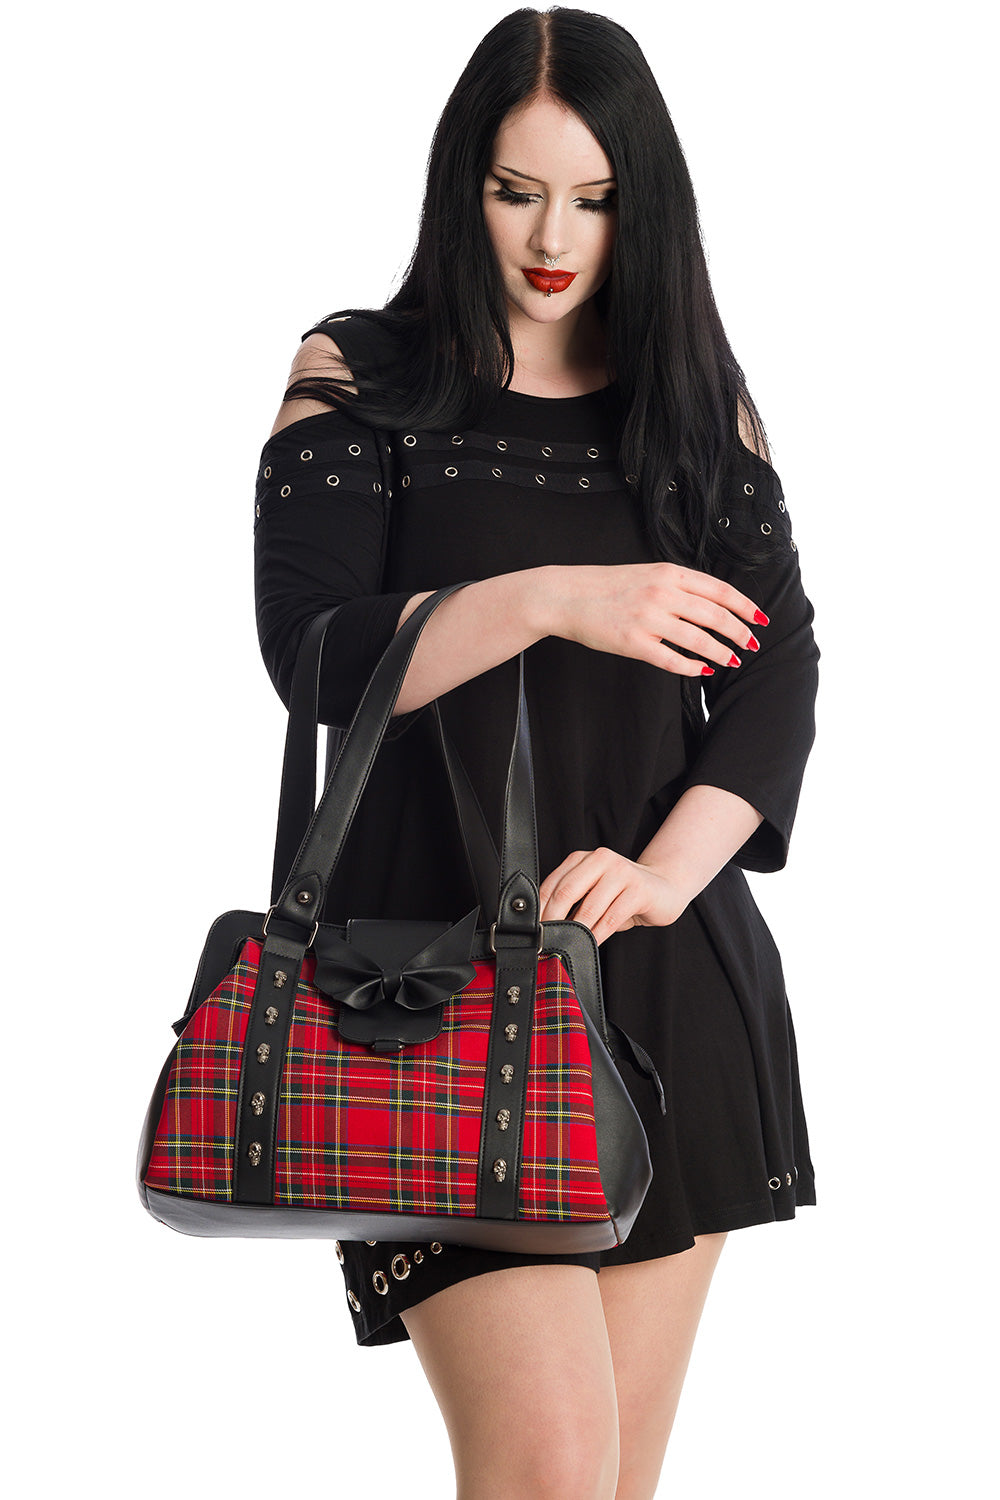 Banned Alternative Krampus Black and Tartan Contrast Handbag